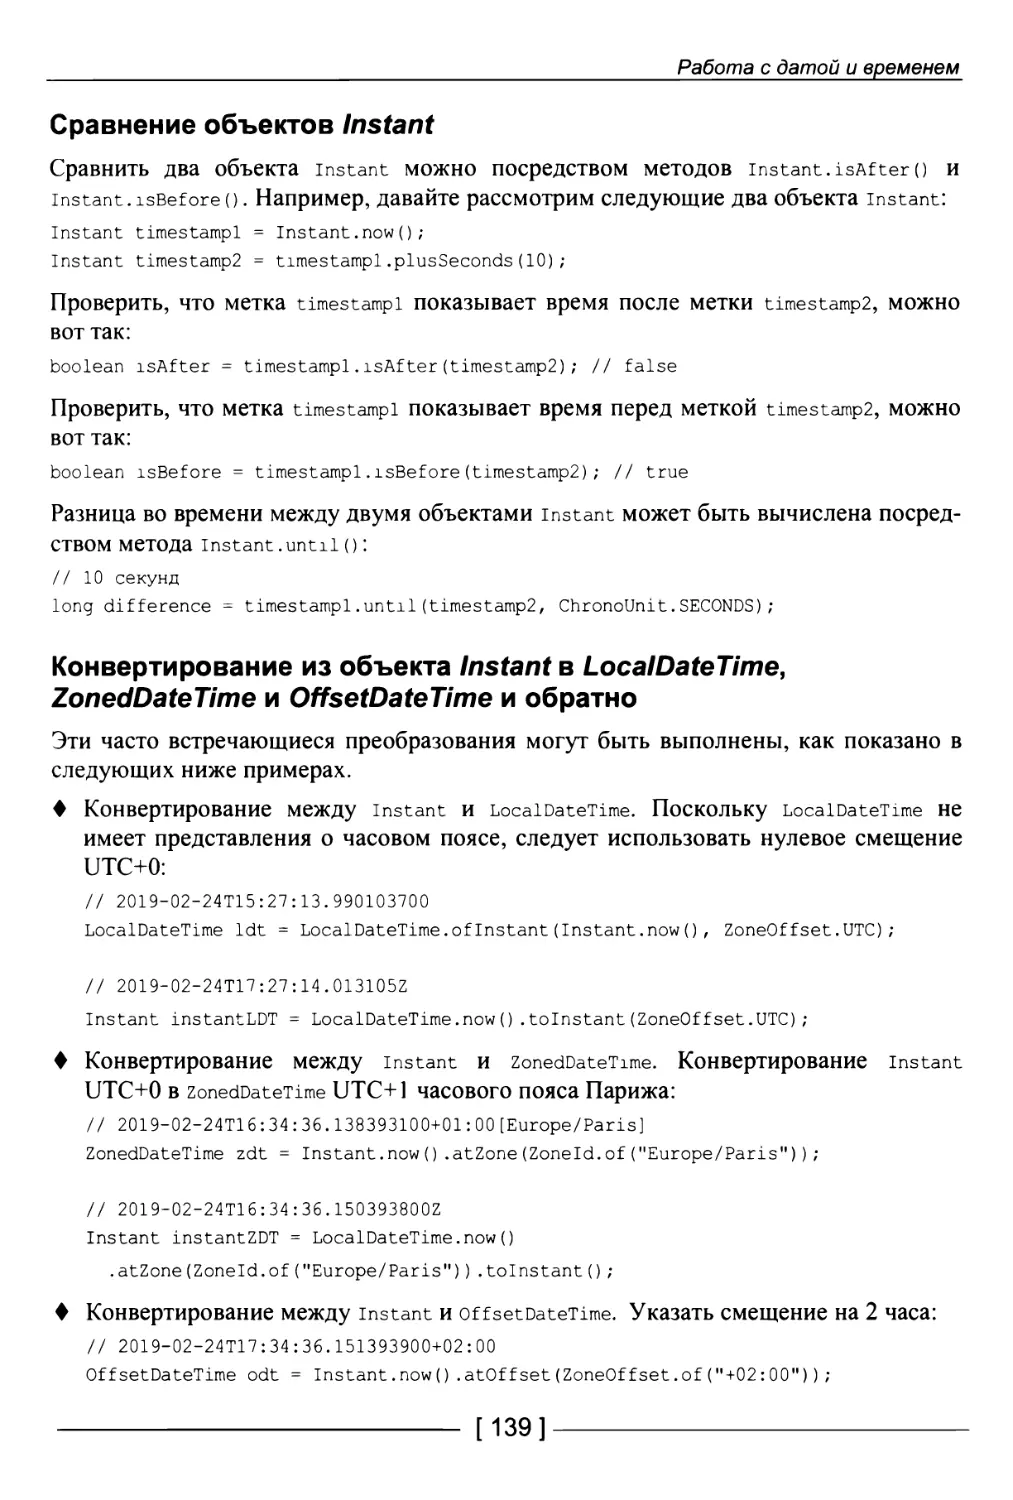 Сравнение объектов Instant
Конвертирование из объекта Instant в LocalDateTime, ZonedDateTime и OffsetDateTime и обратно